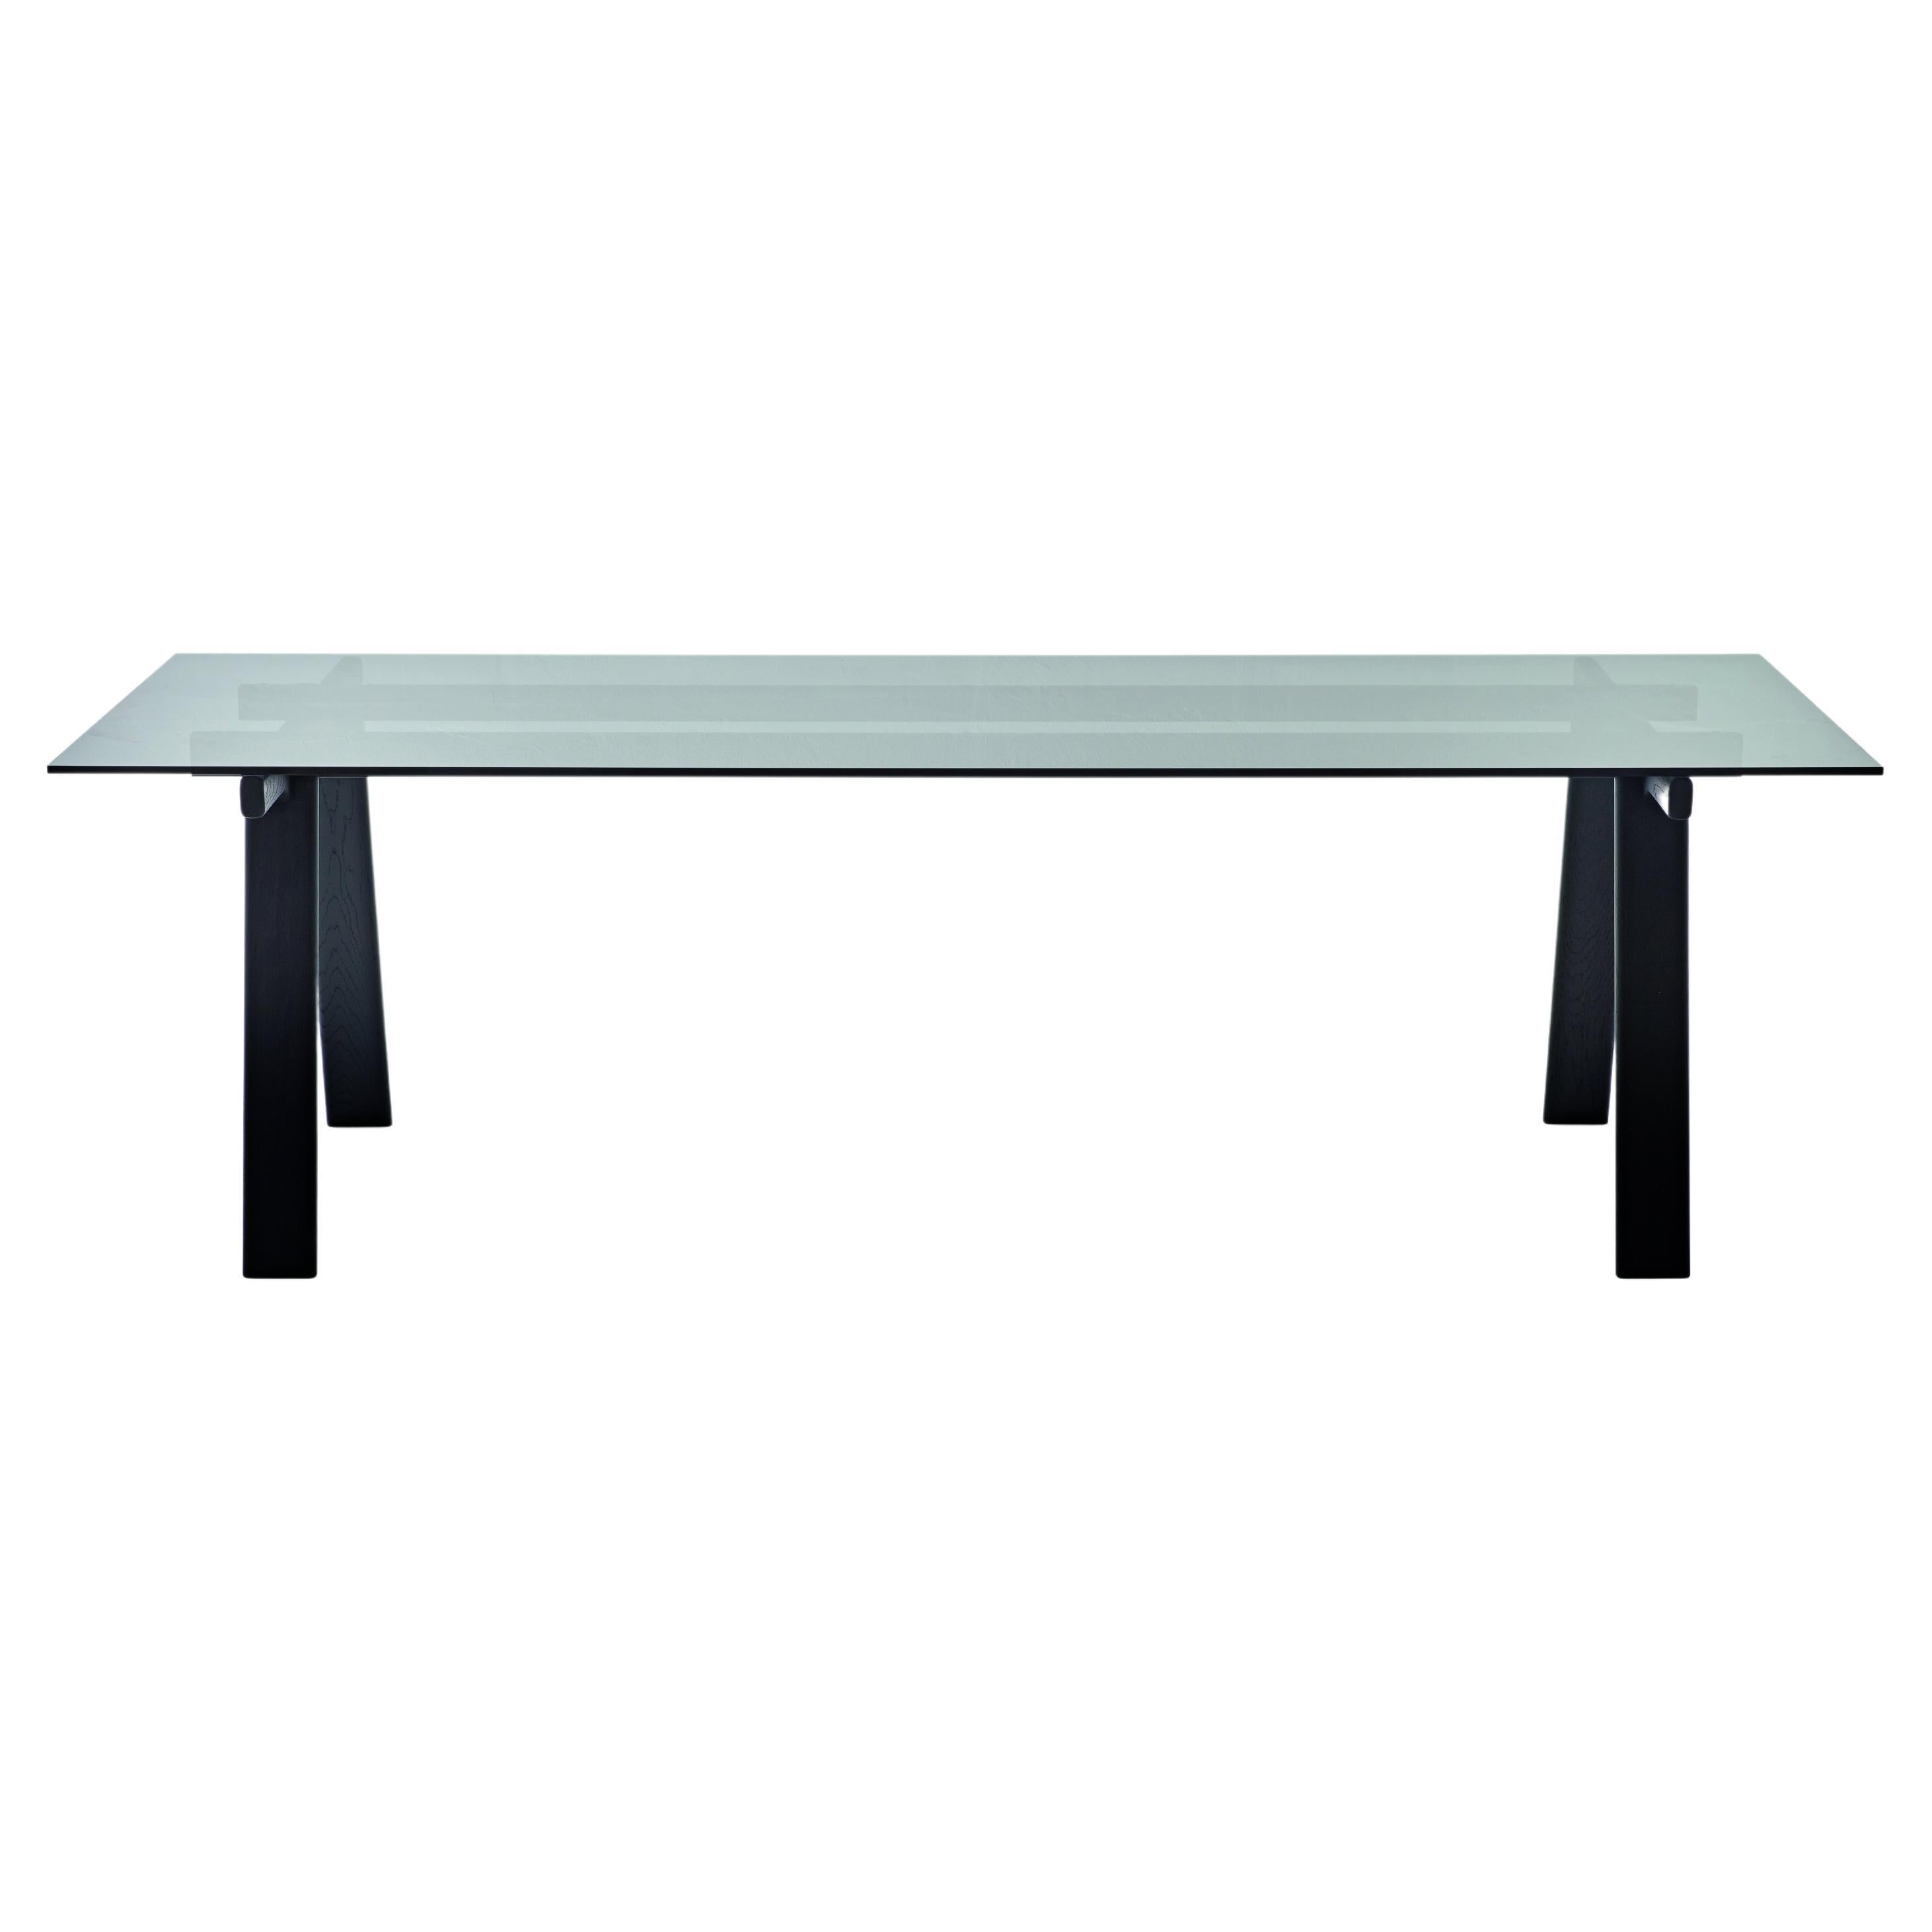 Großer Ambrosiano-Tisch von Zanotta aus rauchgrauem Glas mit schwarzem Rahmen von Mist-o